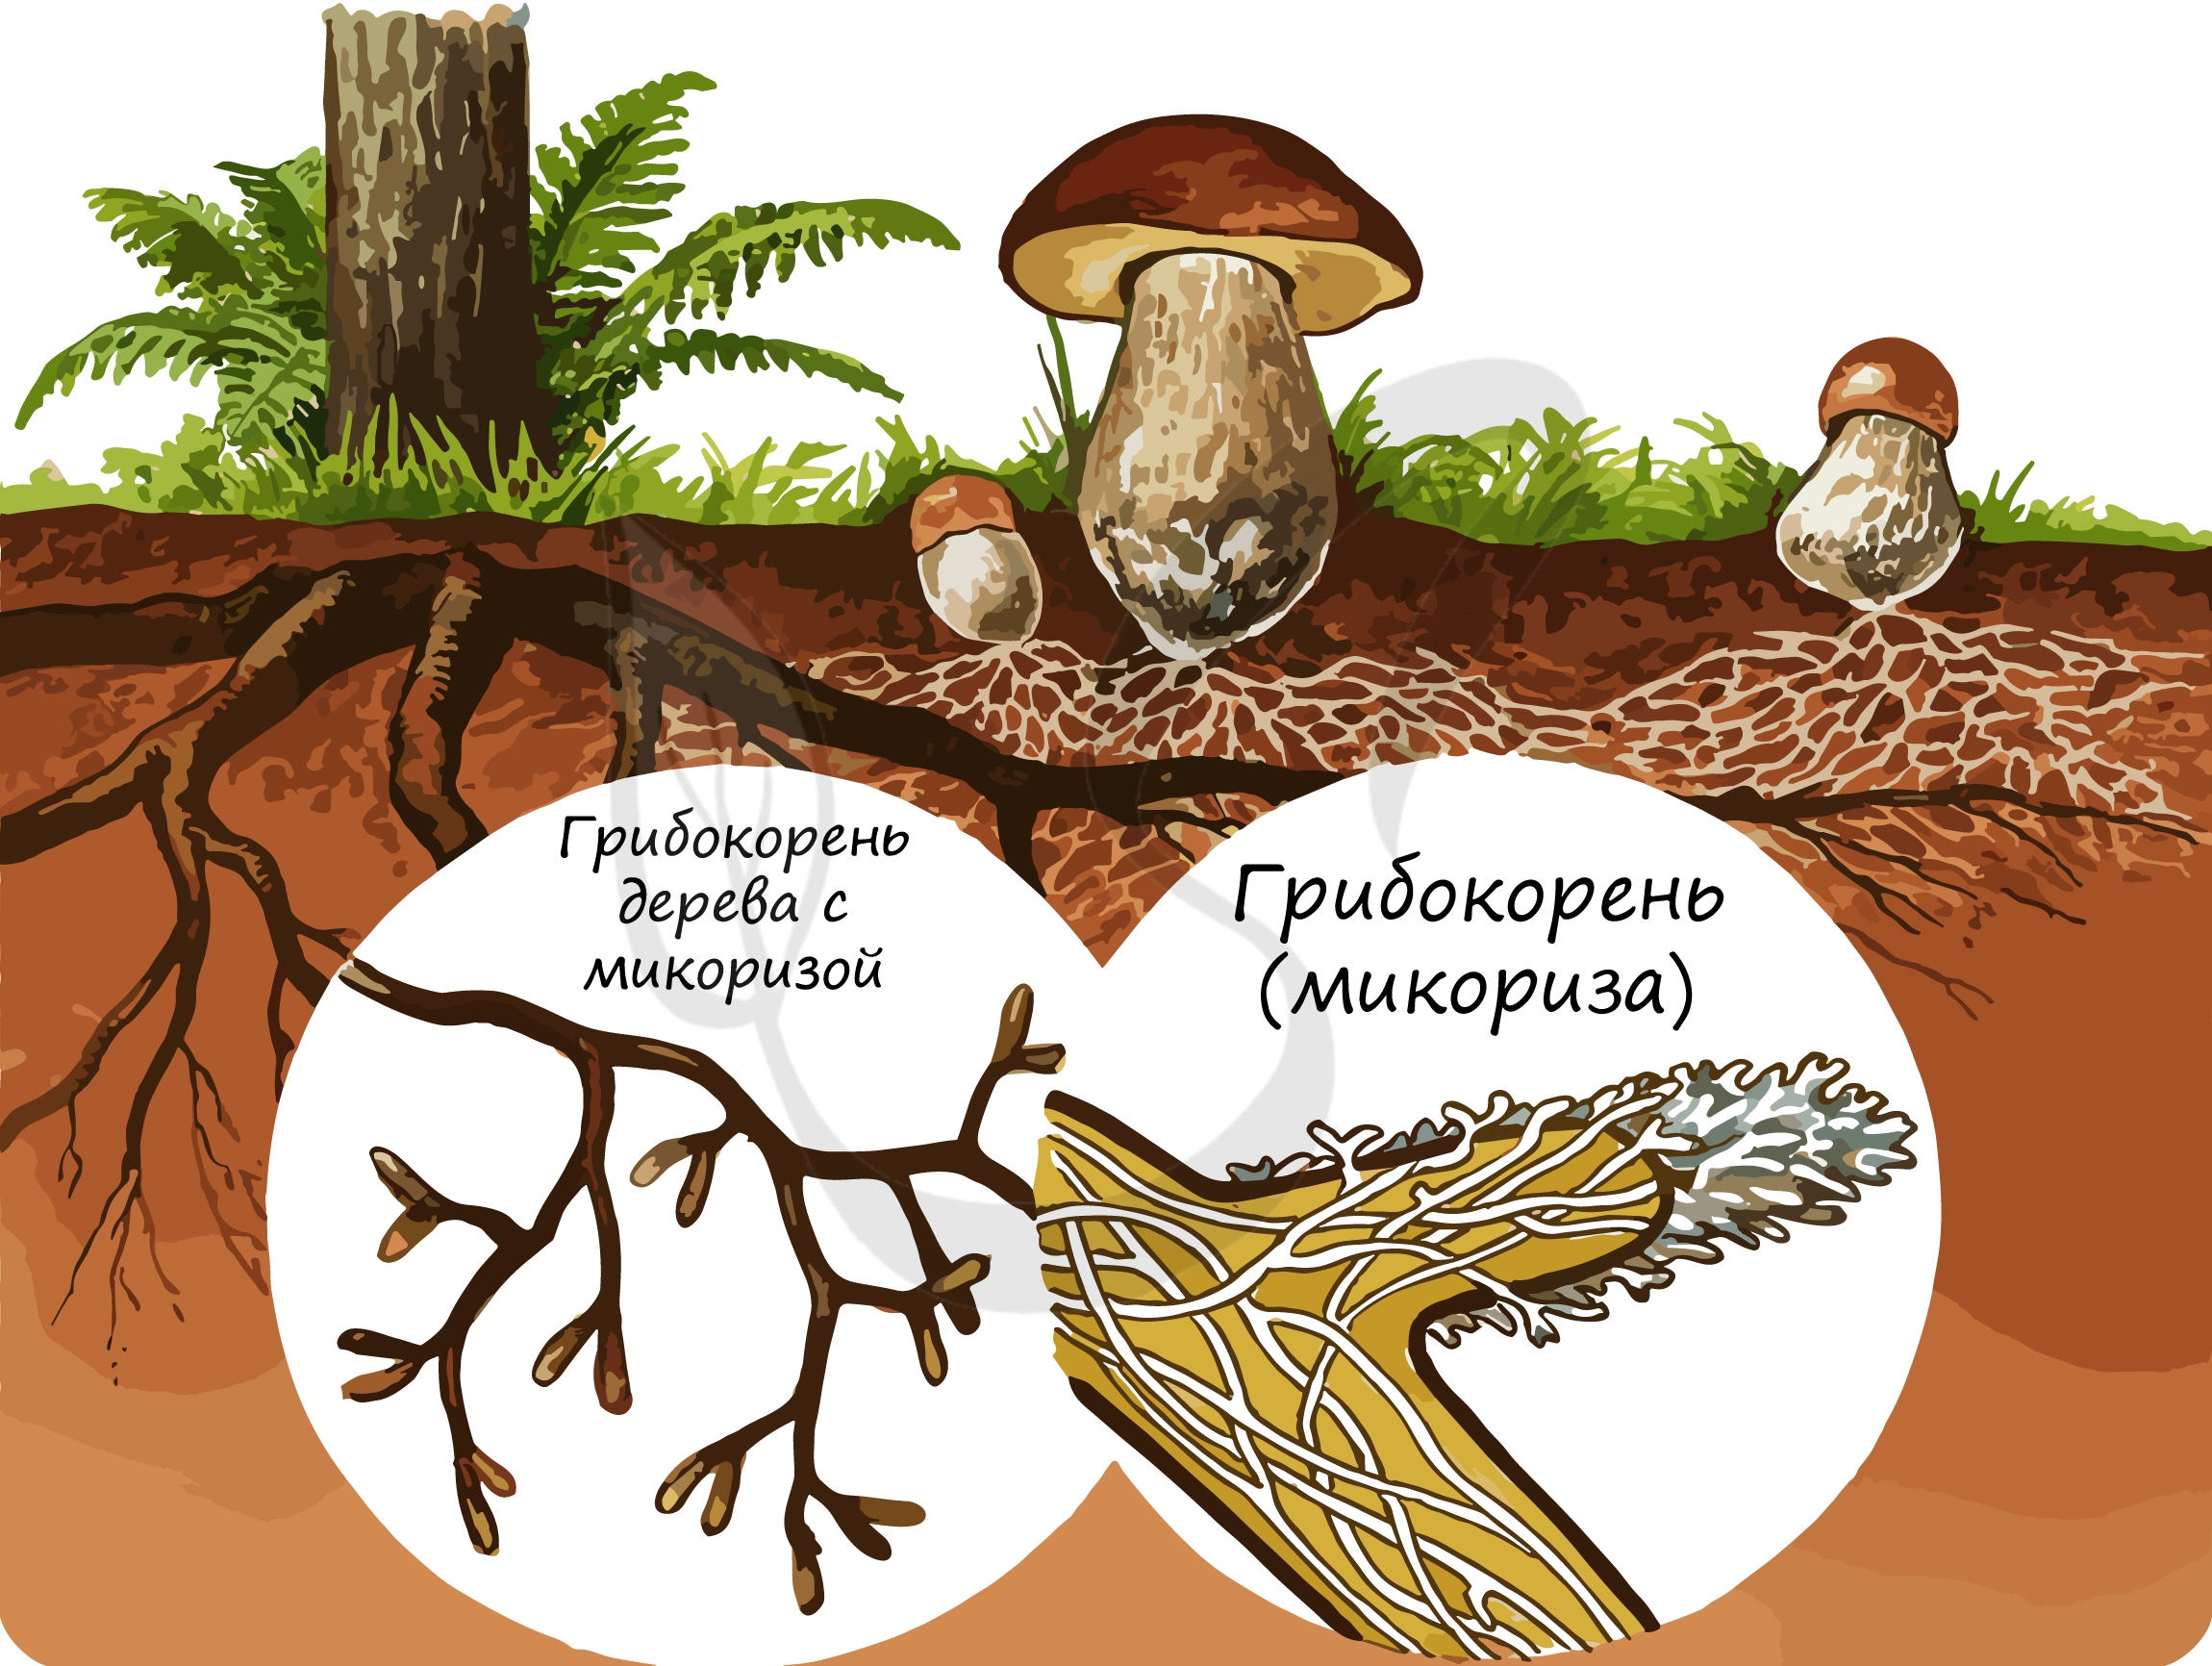 Корни грибов как называется. Строение гриба микориза. Микориза у шляпочных грибов. Что такое микориза у грибов. Микориза грибокорень.